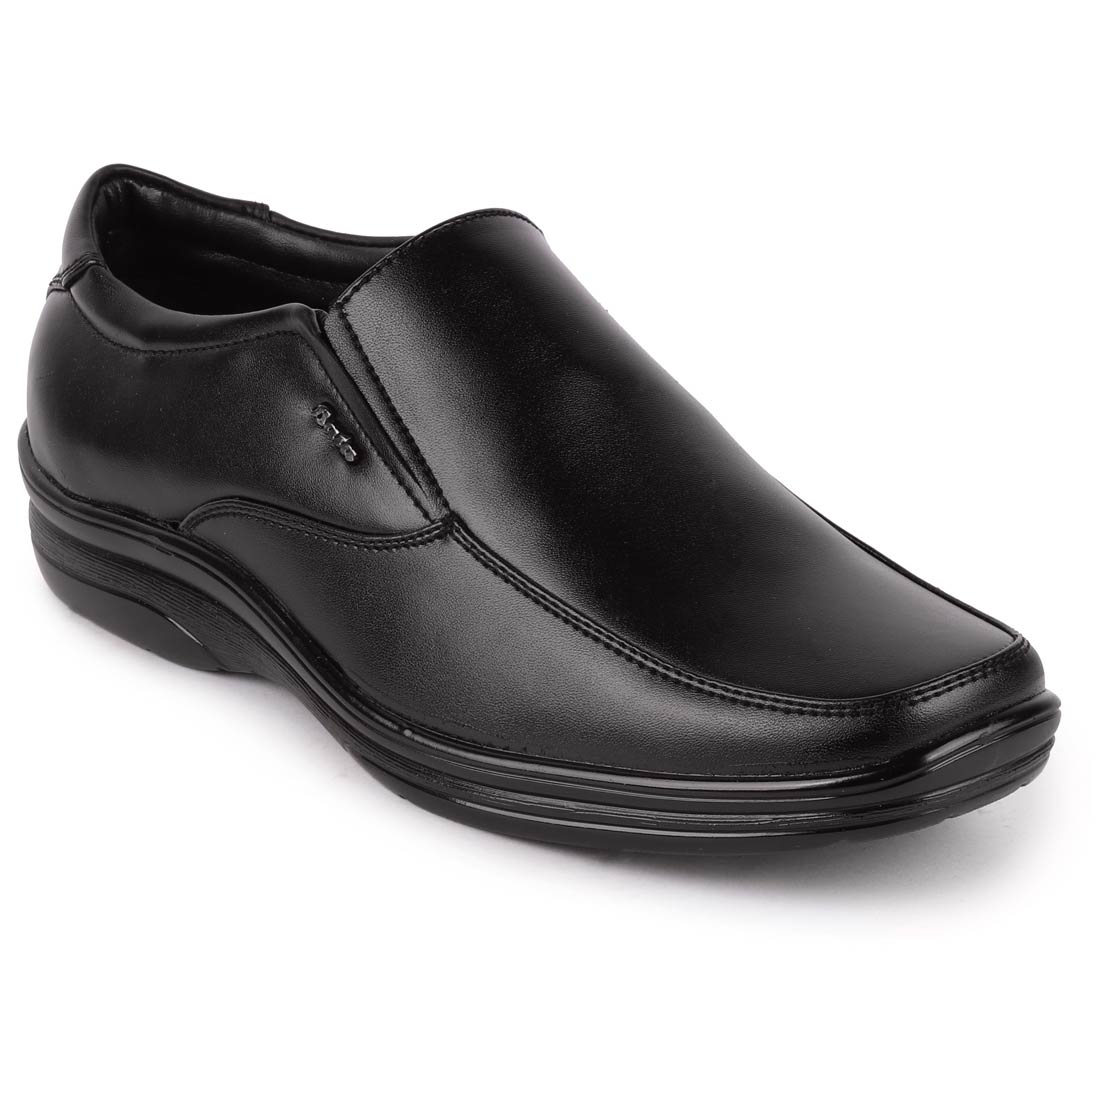 Buy Bata Remo Men Black Slip On Formal Shoes Online - Get 2% Off